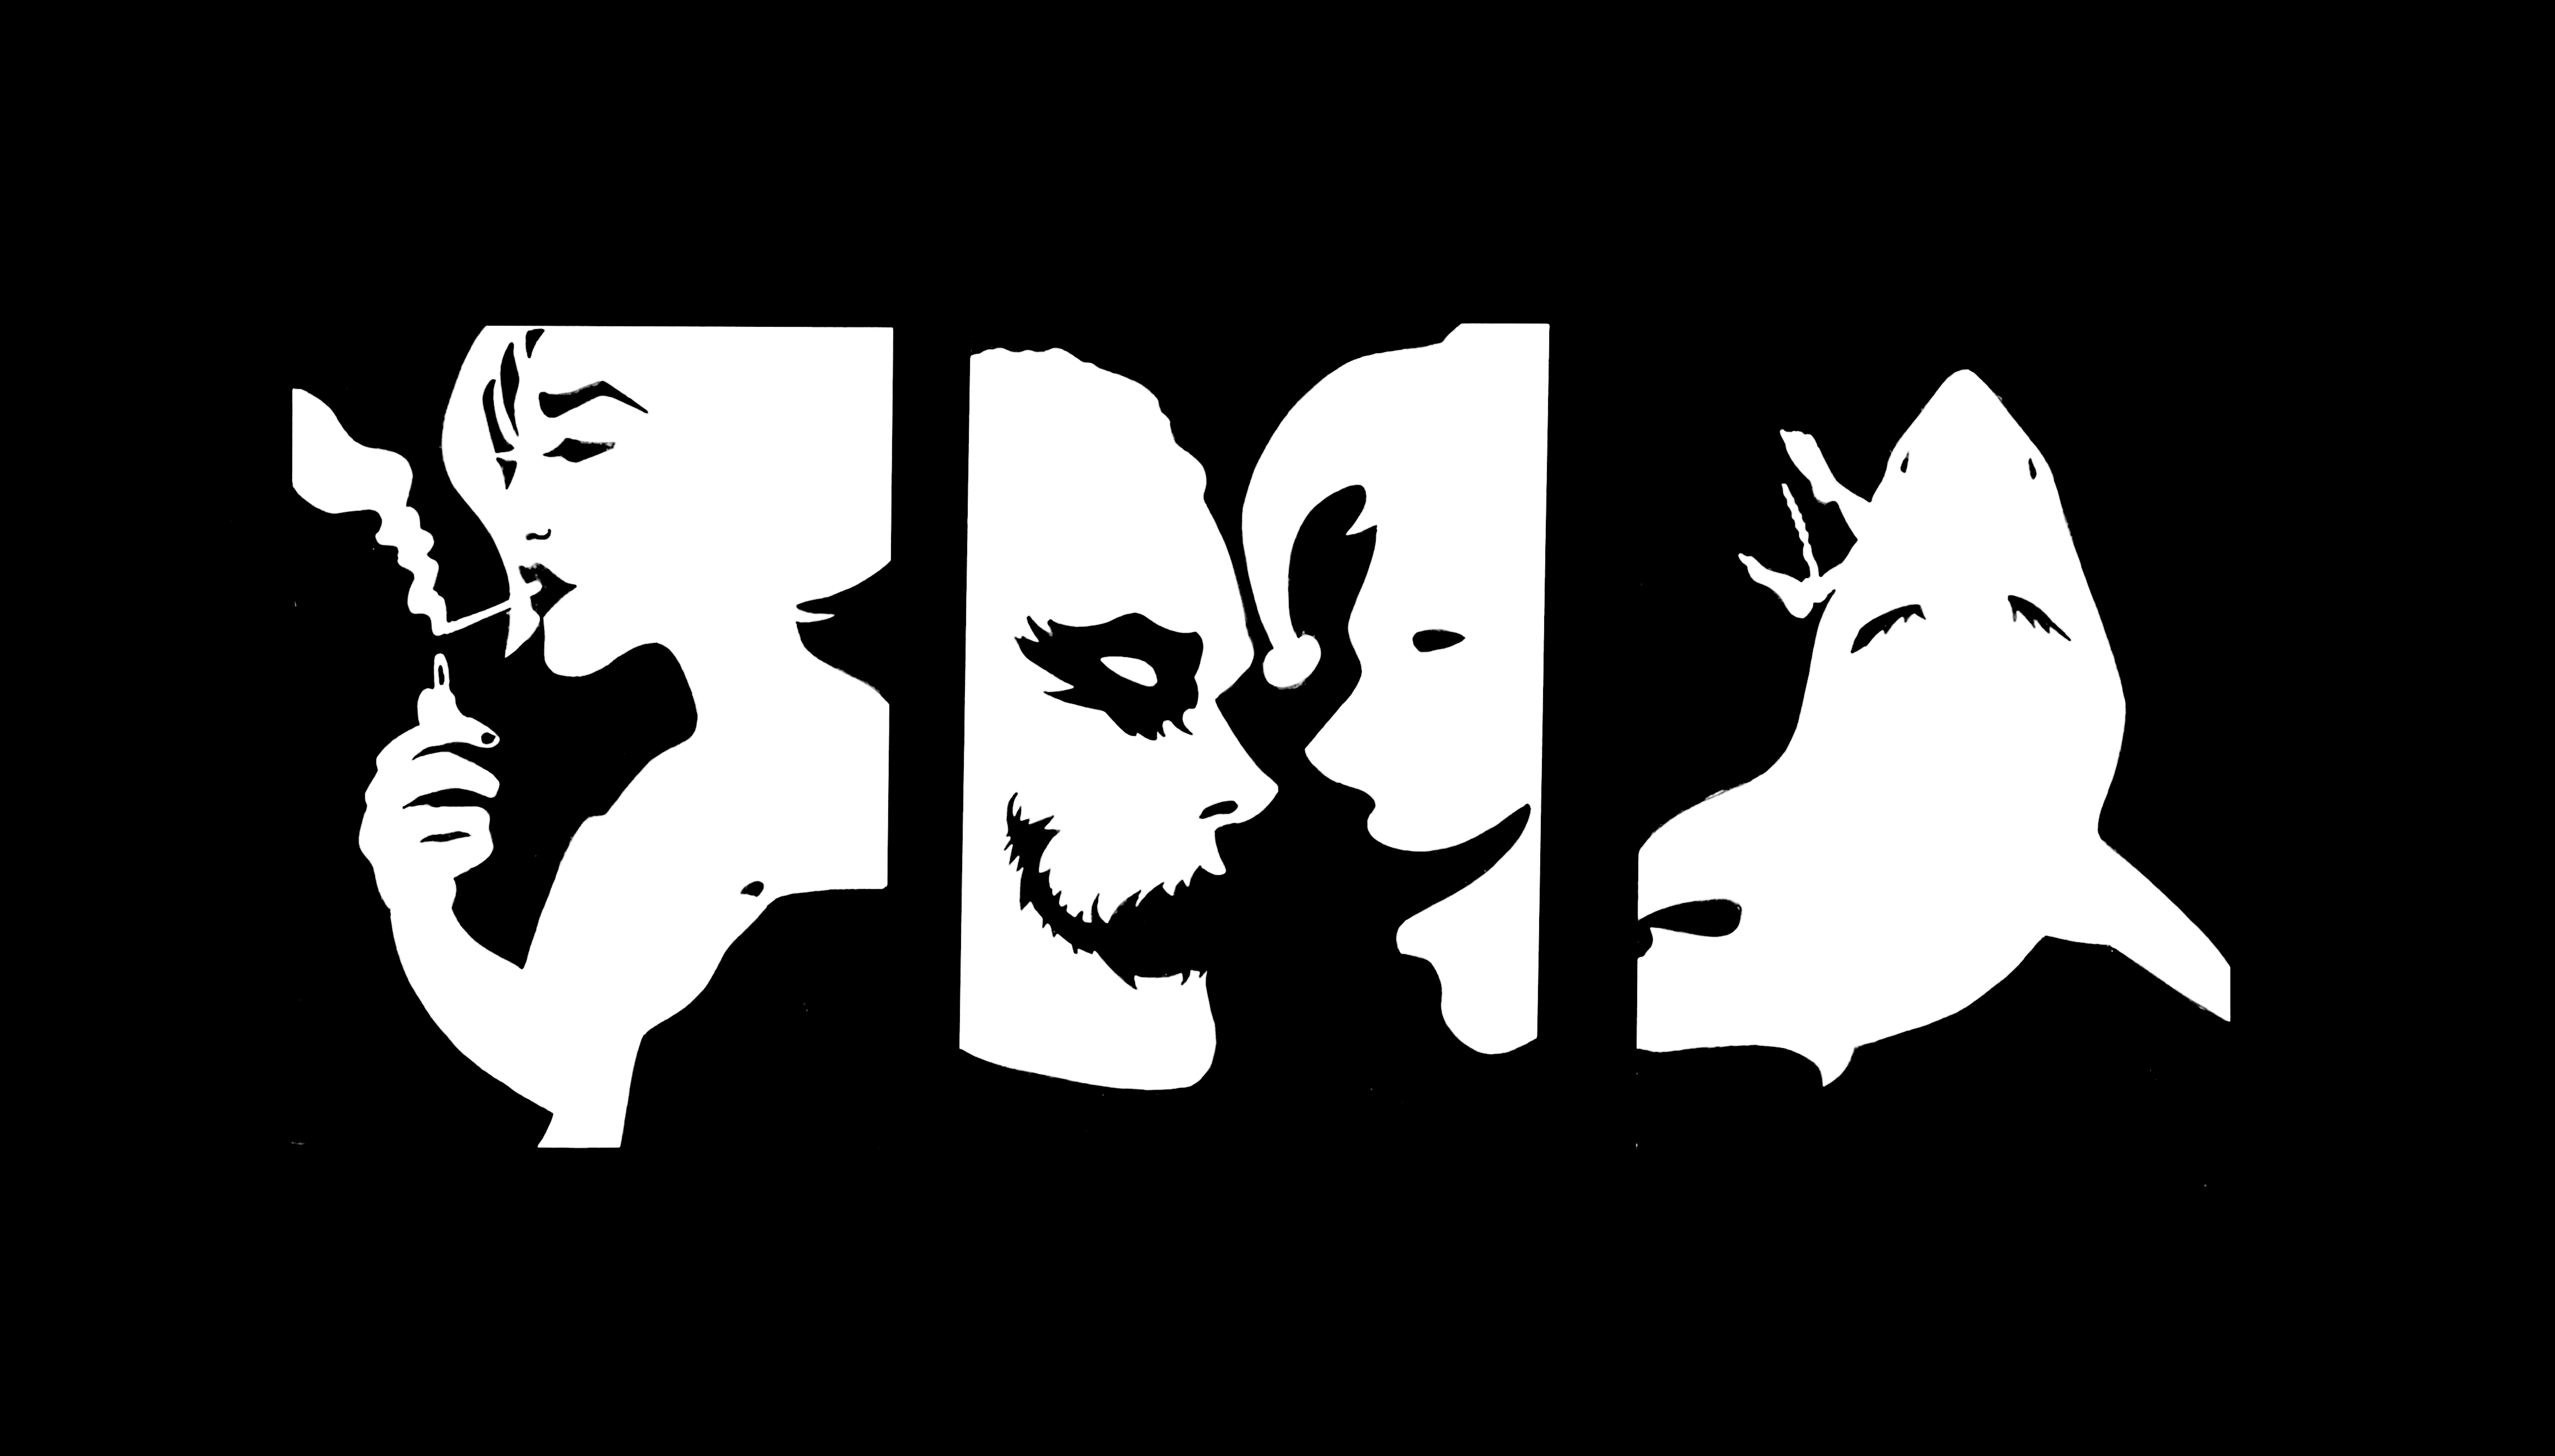 Final renderings of the words 'Smoke', 'Joker', and 'Jaws'